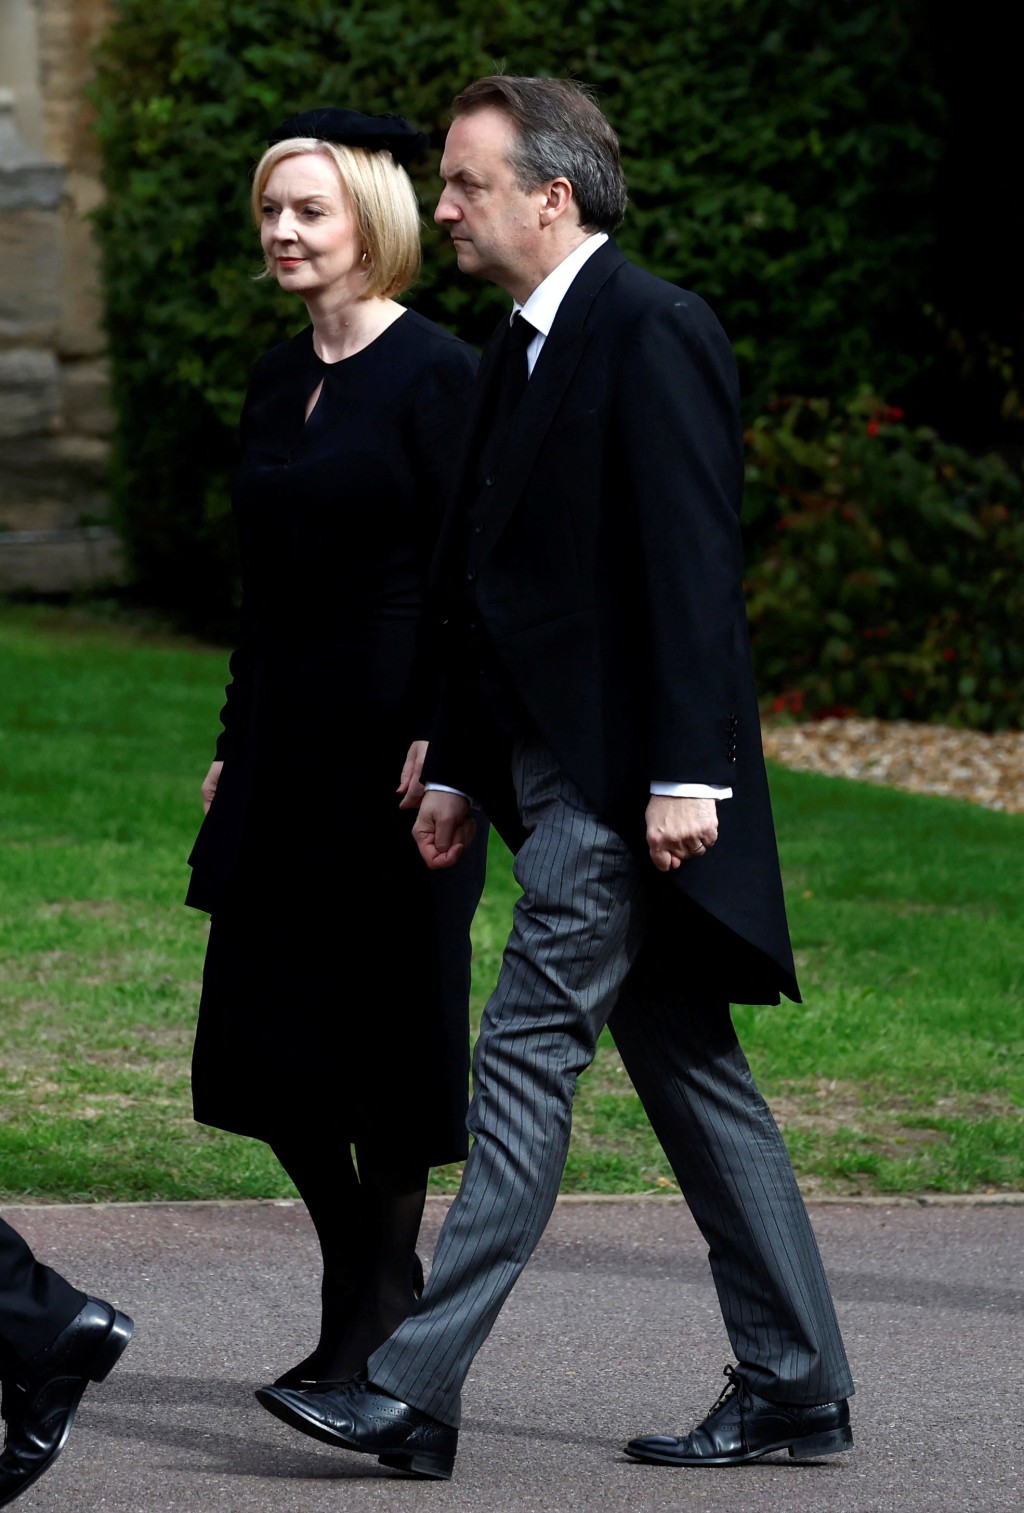 英国新任首相卓慧思和丈夫出席国葬仪式。路透社